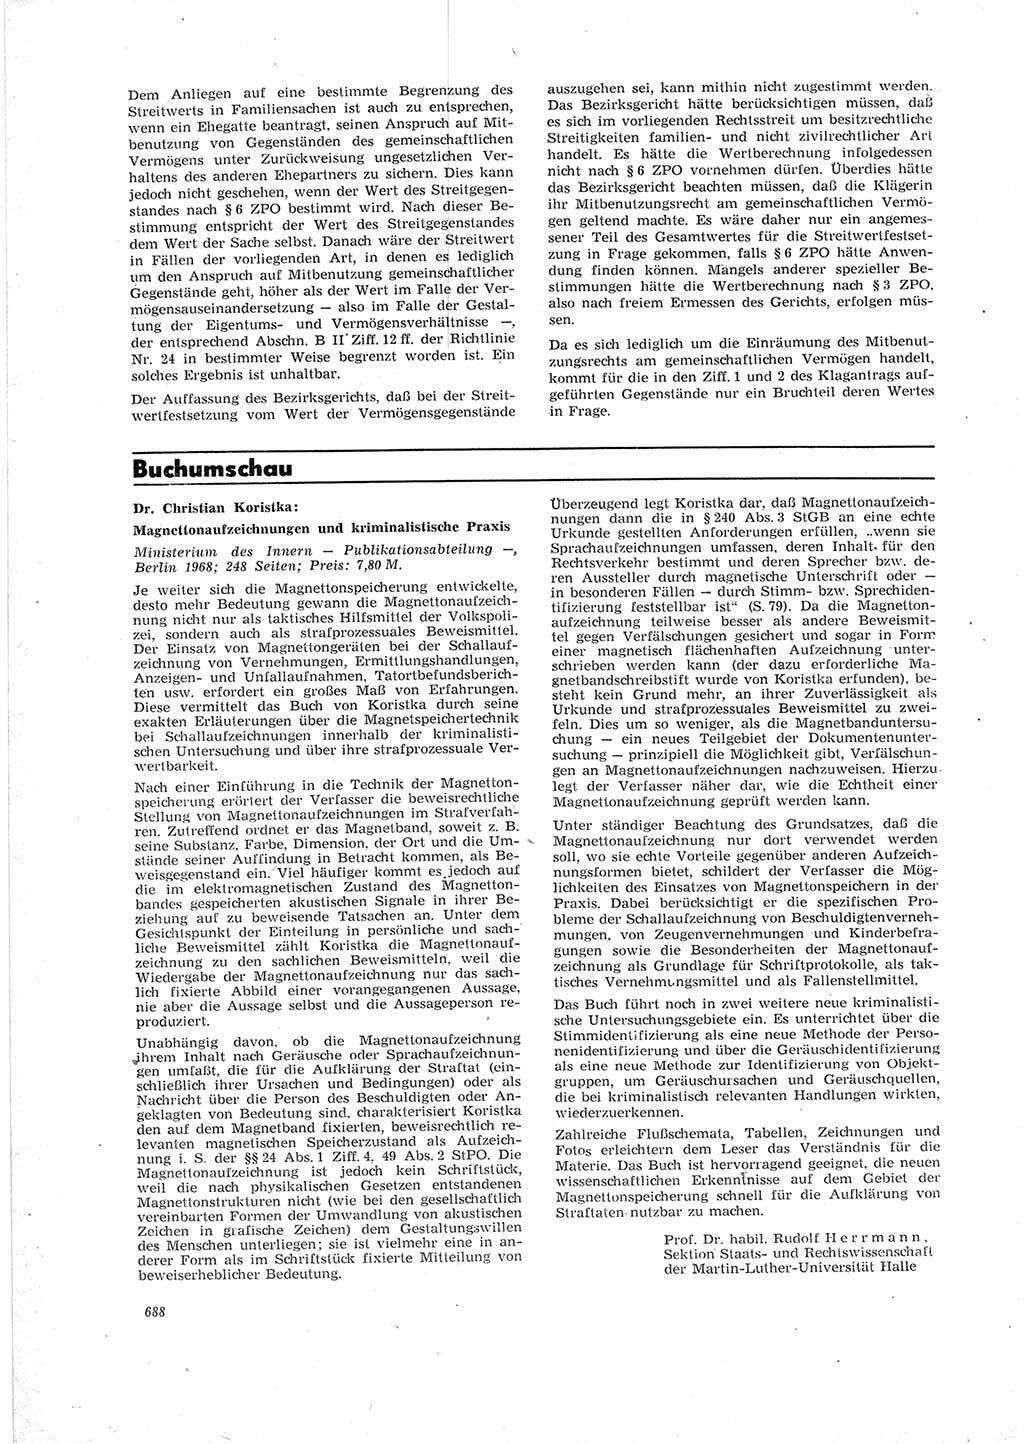 Neue Justiz (NJ), Zeitschrift für Recht und Rechtswissenschaft [Deutsche Demokratische Republik (DDR)], 23. Jahrgang 1969, Seite 688 (NJ DDR 1969, S. 688)